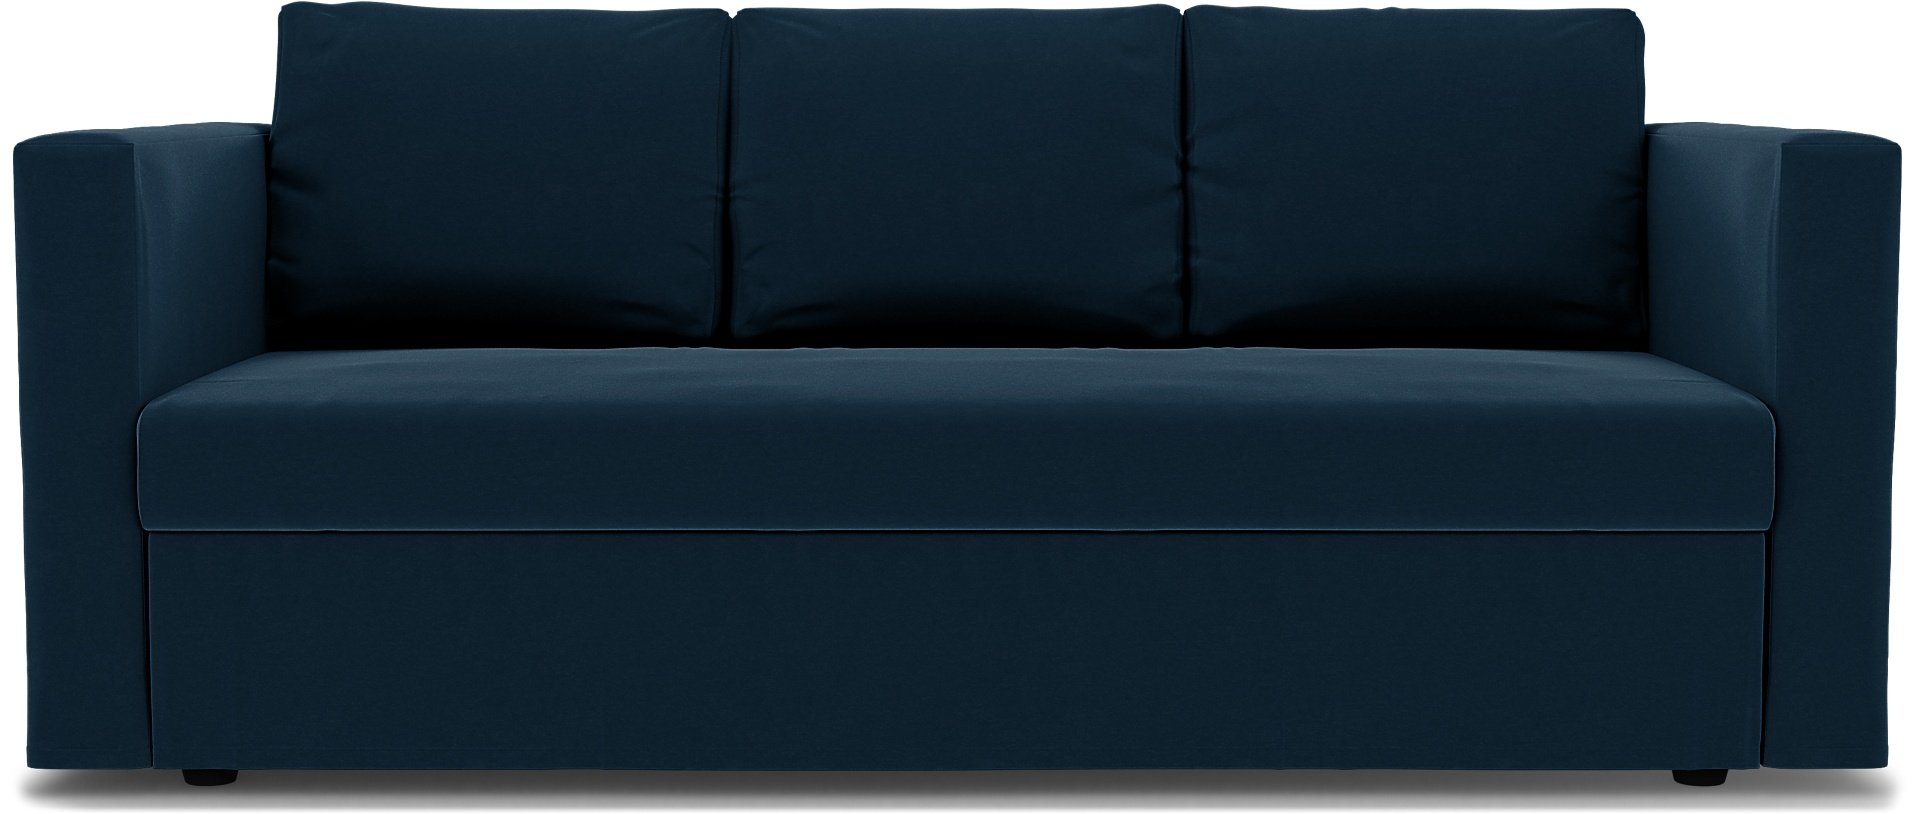 IKEA - Friheten 3 Seater Sofa Bed Cover, Midnight, Velvet - Bemz